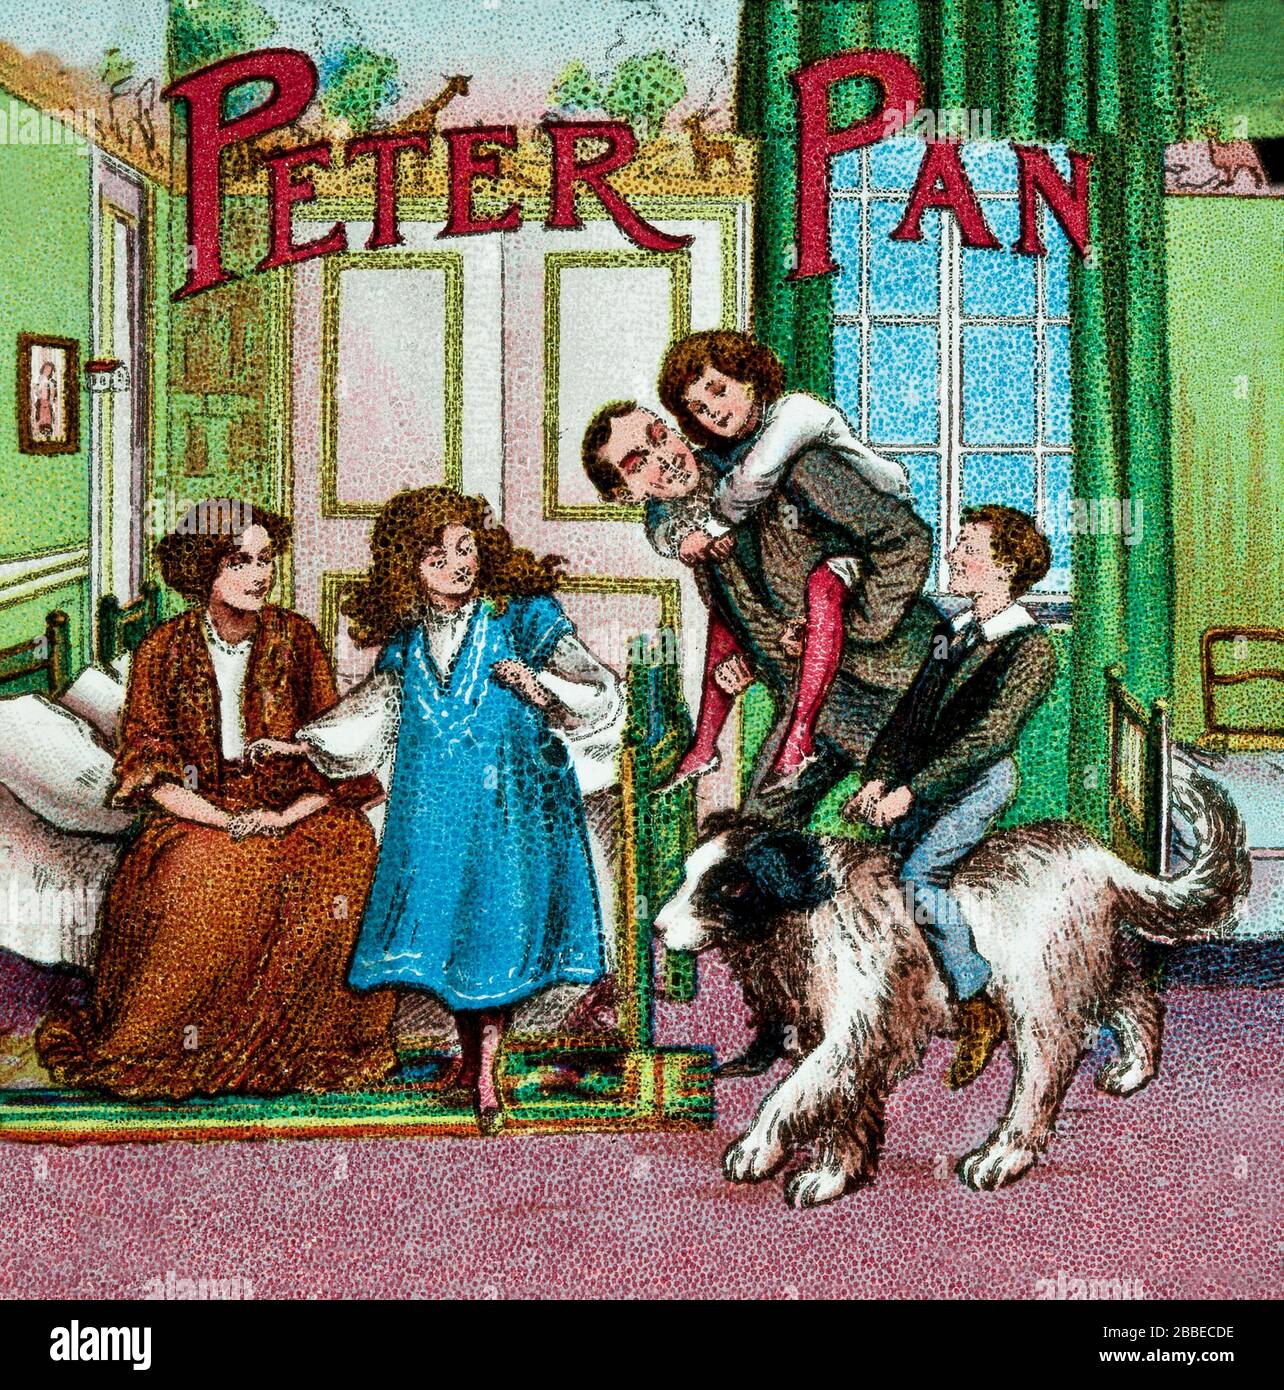 Avventure d'infanzia di Peter Pan e la mitica isola di Neverland , un personaggio immaginario creato dal romanziere e drammaturgo scozzese J. M. Barrie. Si tratta di illustrazioni a colori animate a partire dall'anno 1900. Foto Stock